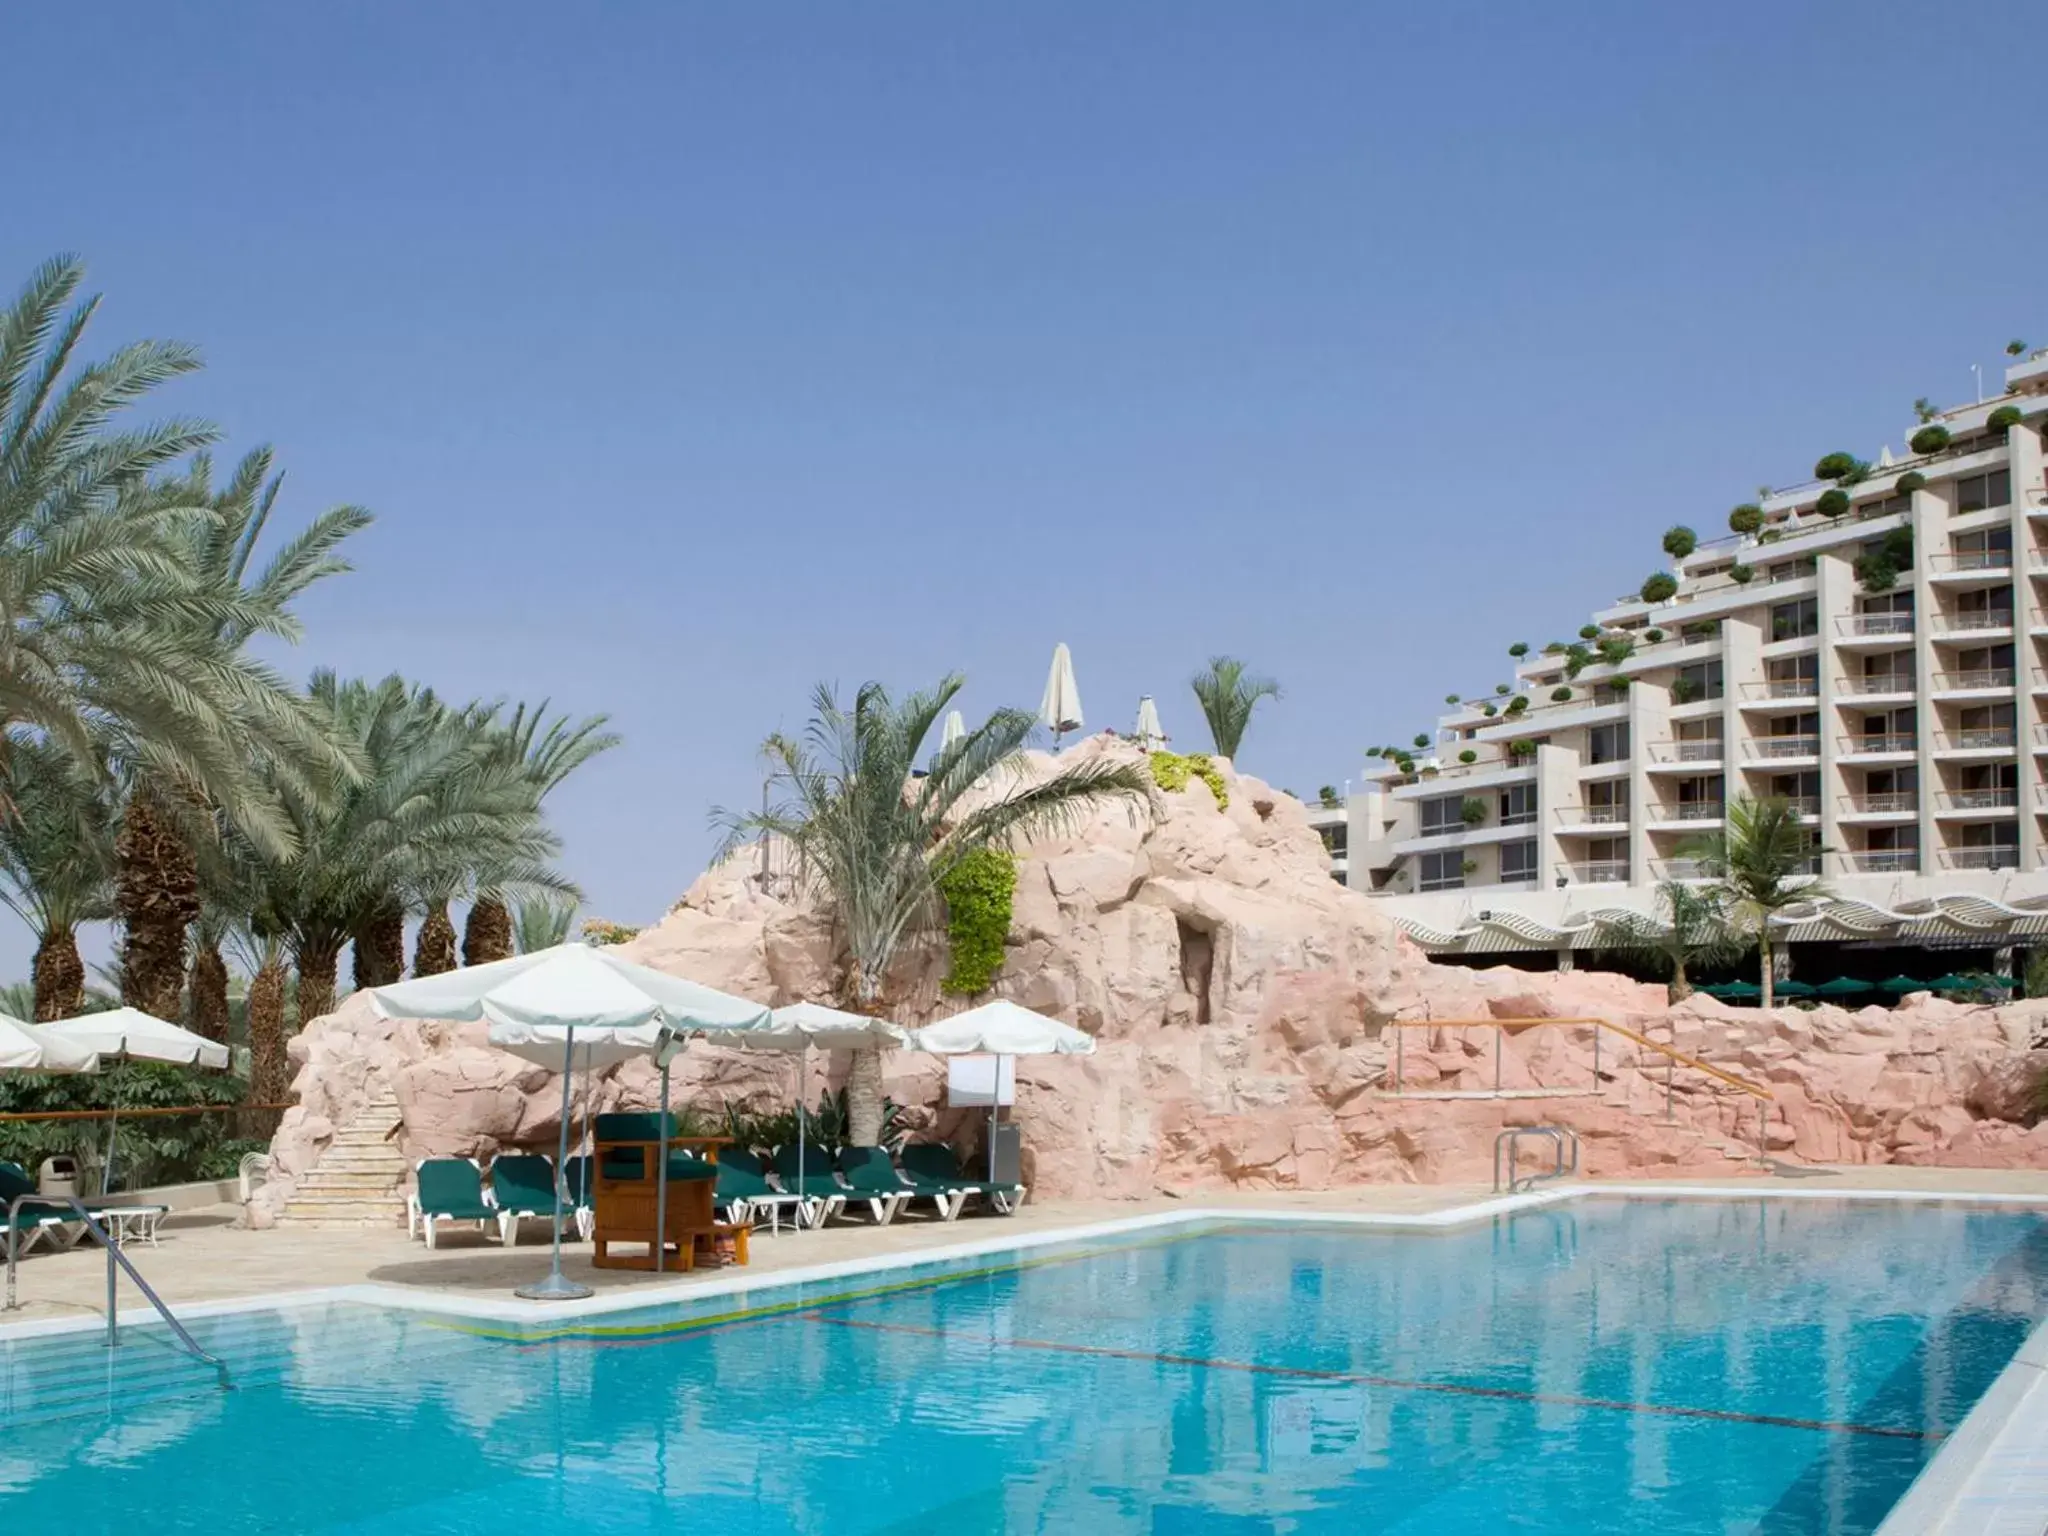 Swimming Pool in Dan Eilat Hotel